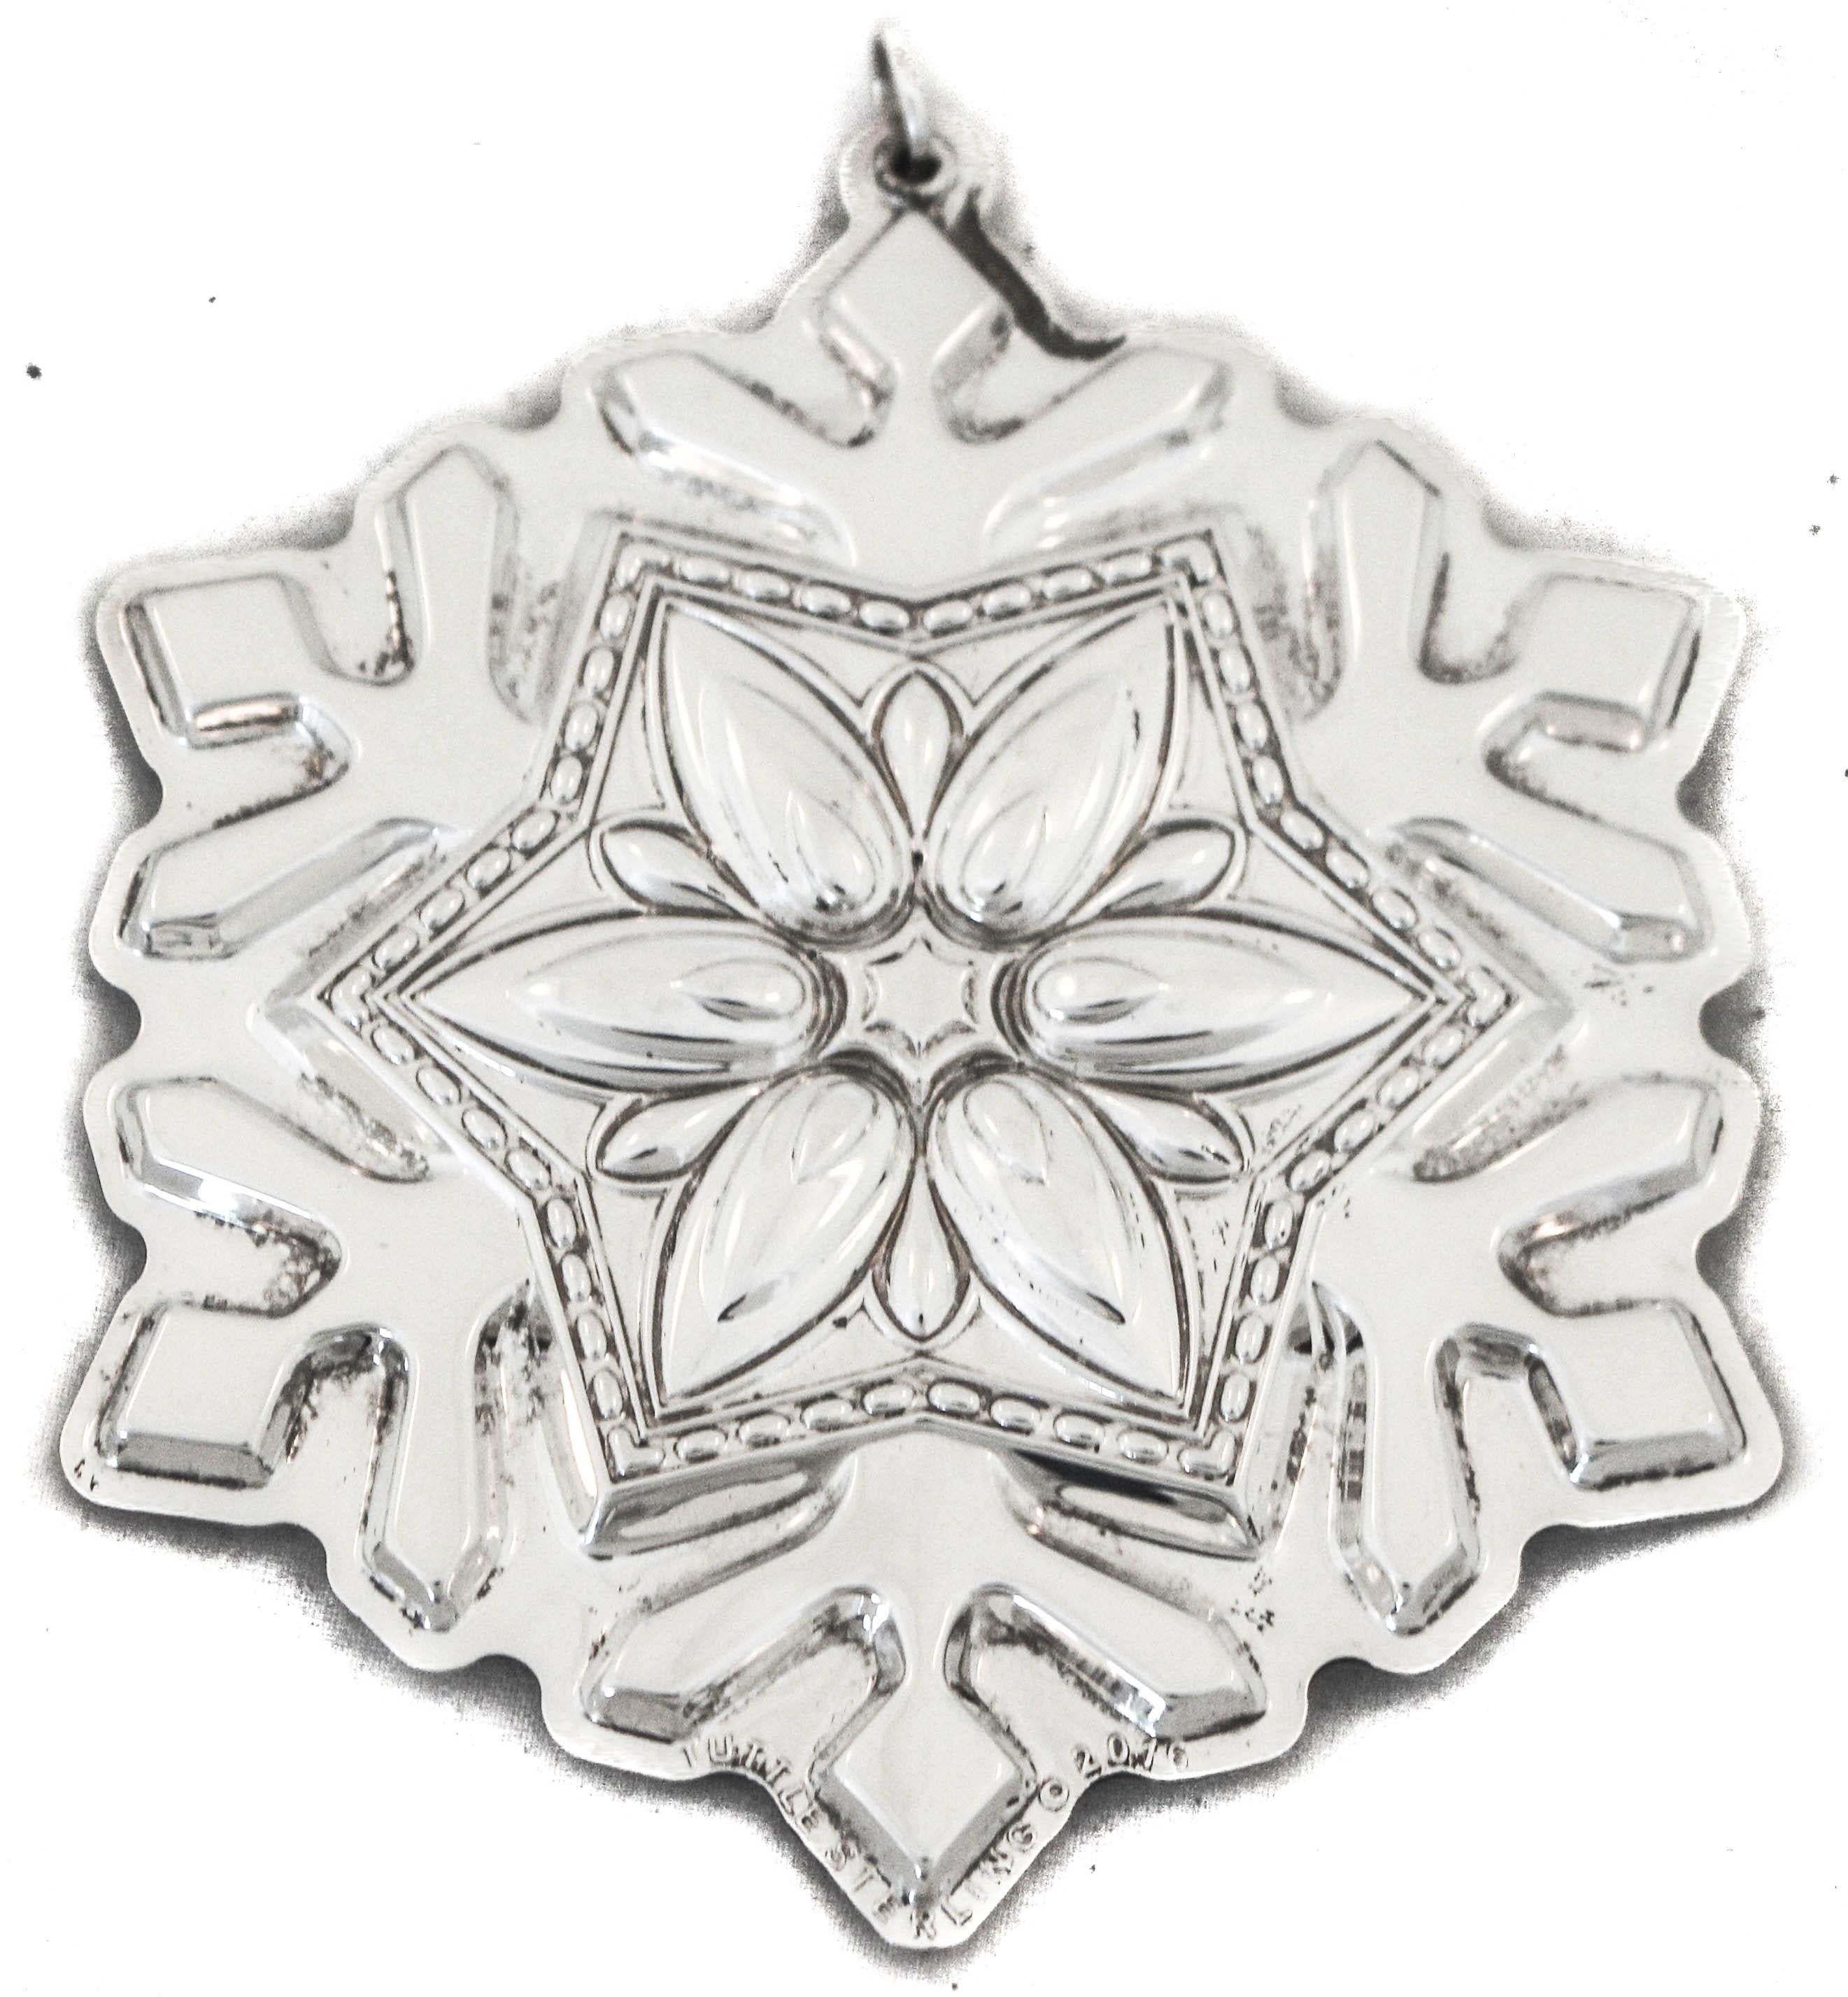 Wir freuen uns, Ihnen dieses weihnachtliche Schneeflockenornament aus Sterlingsilber von der Kirk-Stieff Silver Company aus Baltimore, Maryland, anbieten zu können. 
Diese Schneeflocke hat sechs Punkte mit Blumen in der Mitte und eine große Blume